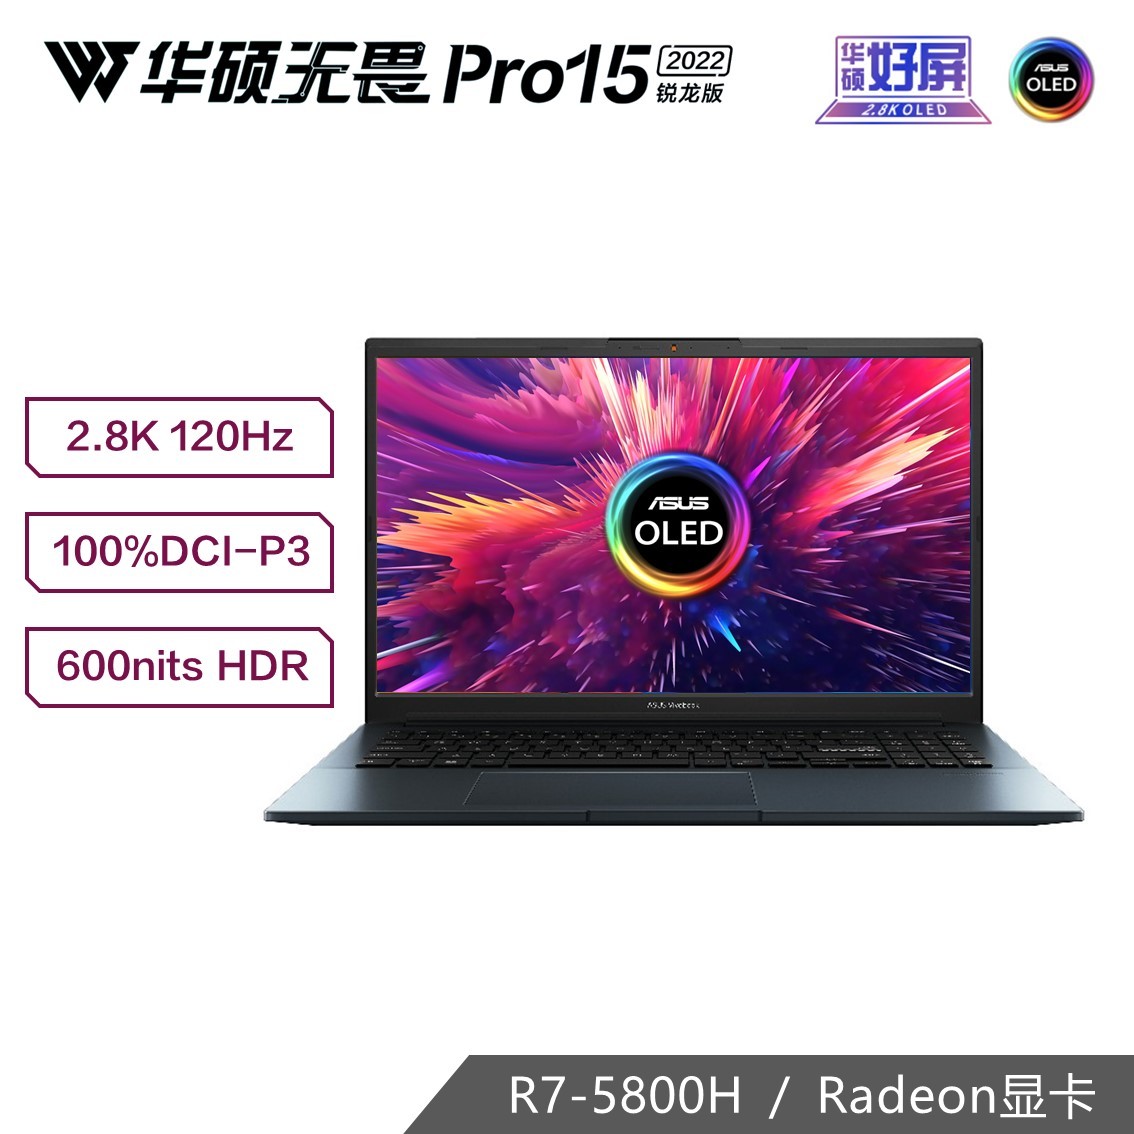 无畏Pro15 浩瀚蓝 标压锐龙R7 2.8K 120Hz OLED高性能轻薄笔记本电脑-15.6英寸（Win11/R7-5800H/16GB/512G SSD/100%DCI-P3）